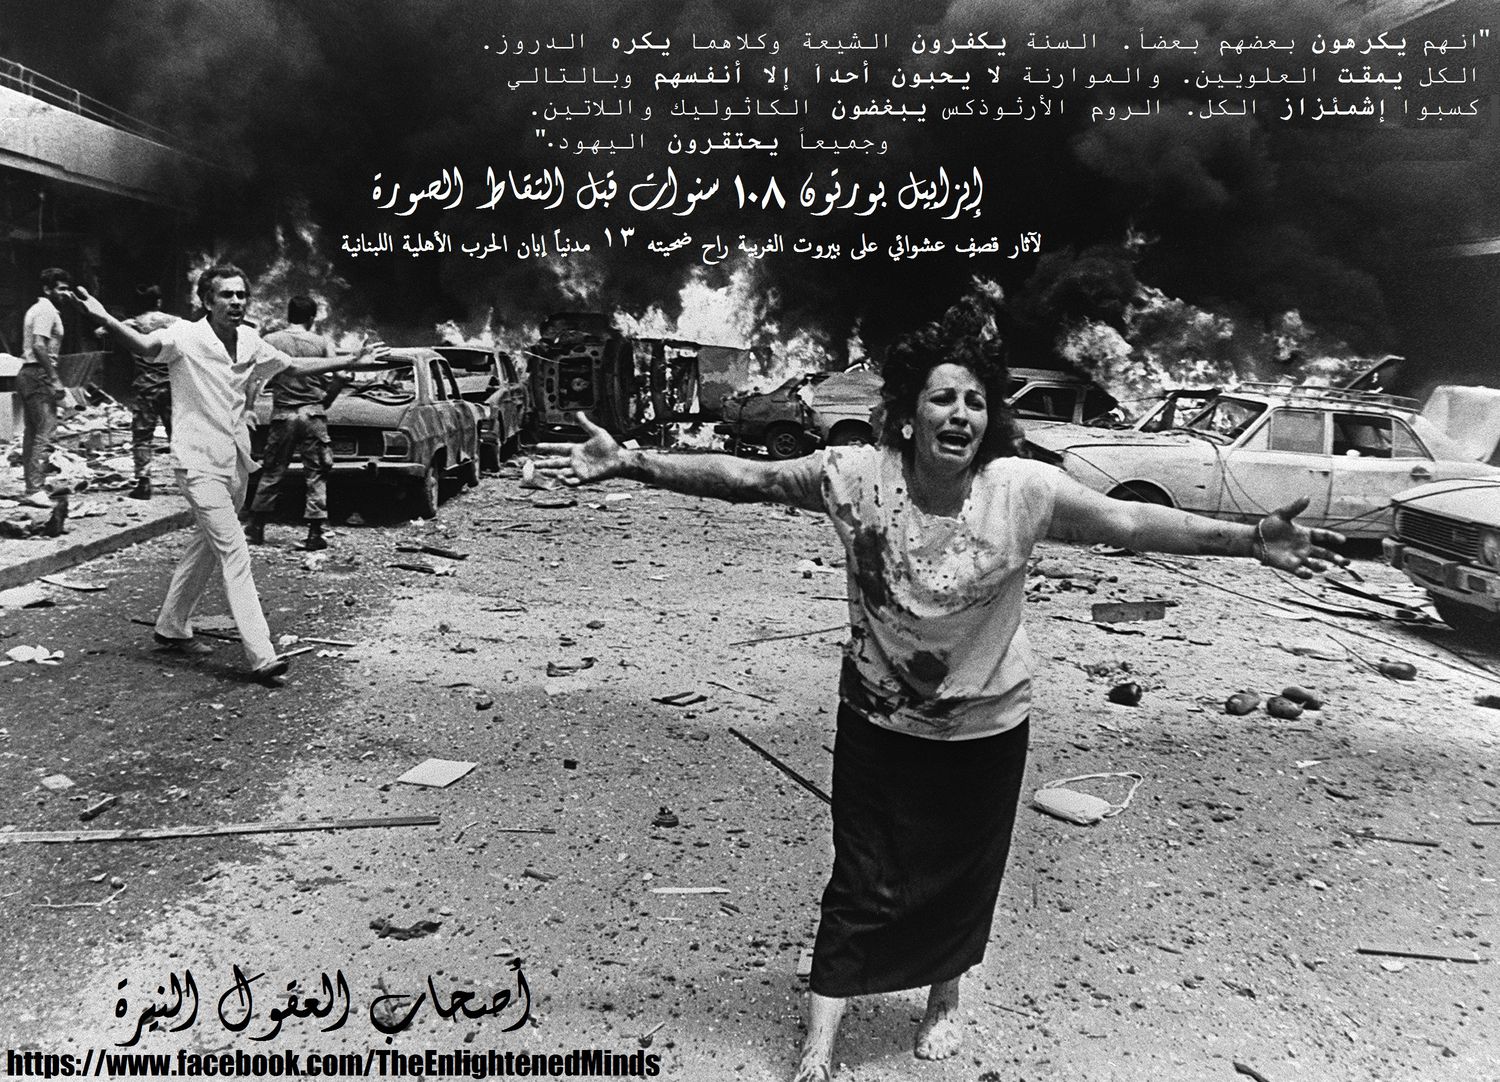 الحرب اللبنانية 1975 - 1990